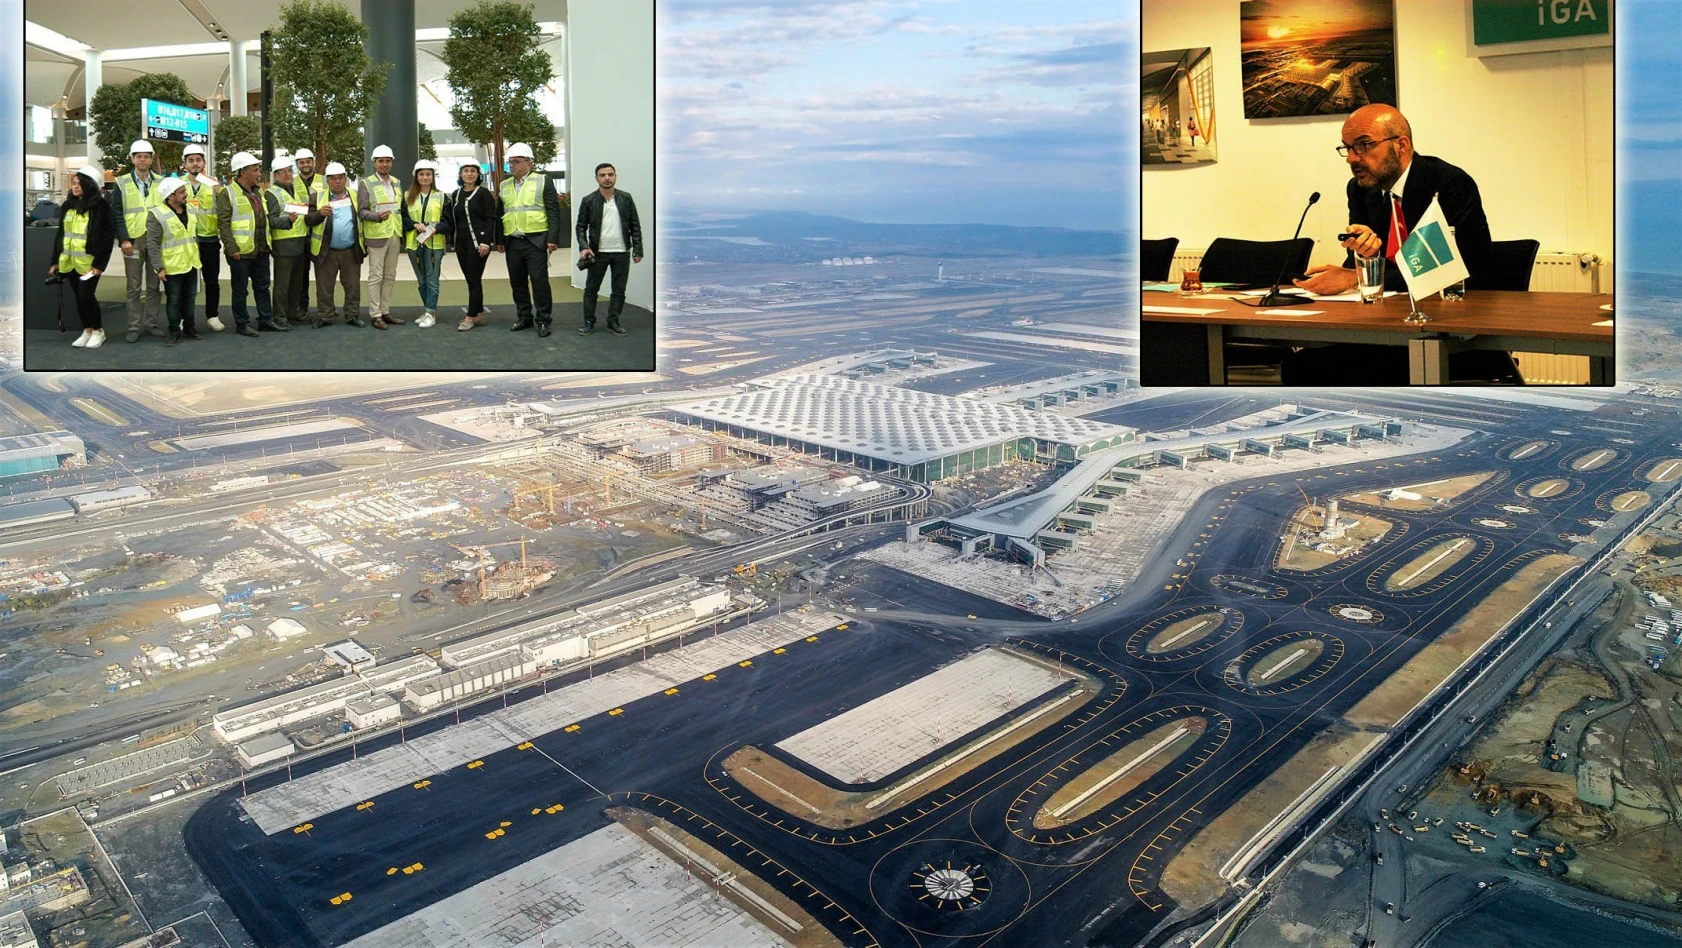 İGA Genel Müdürü Samsunlu: 'Yeni Havalimanı bir özgüven projesidir'